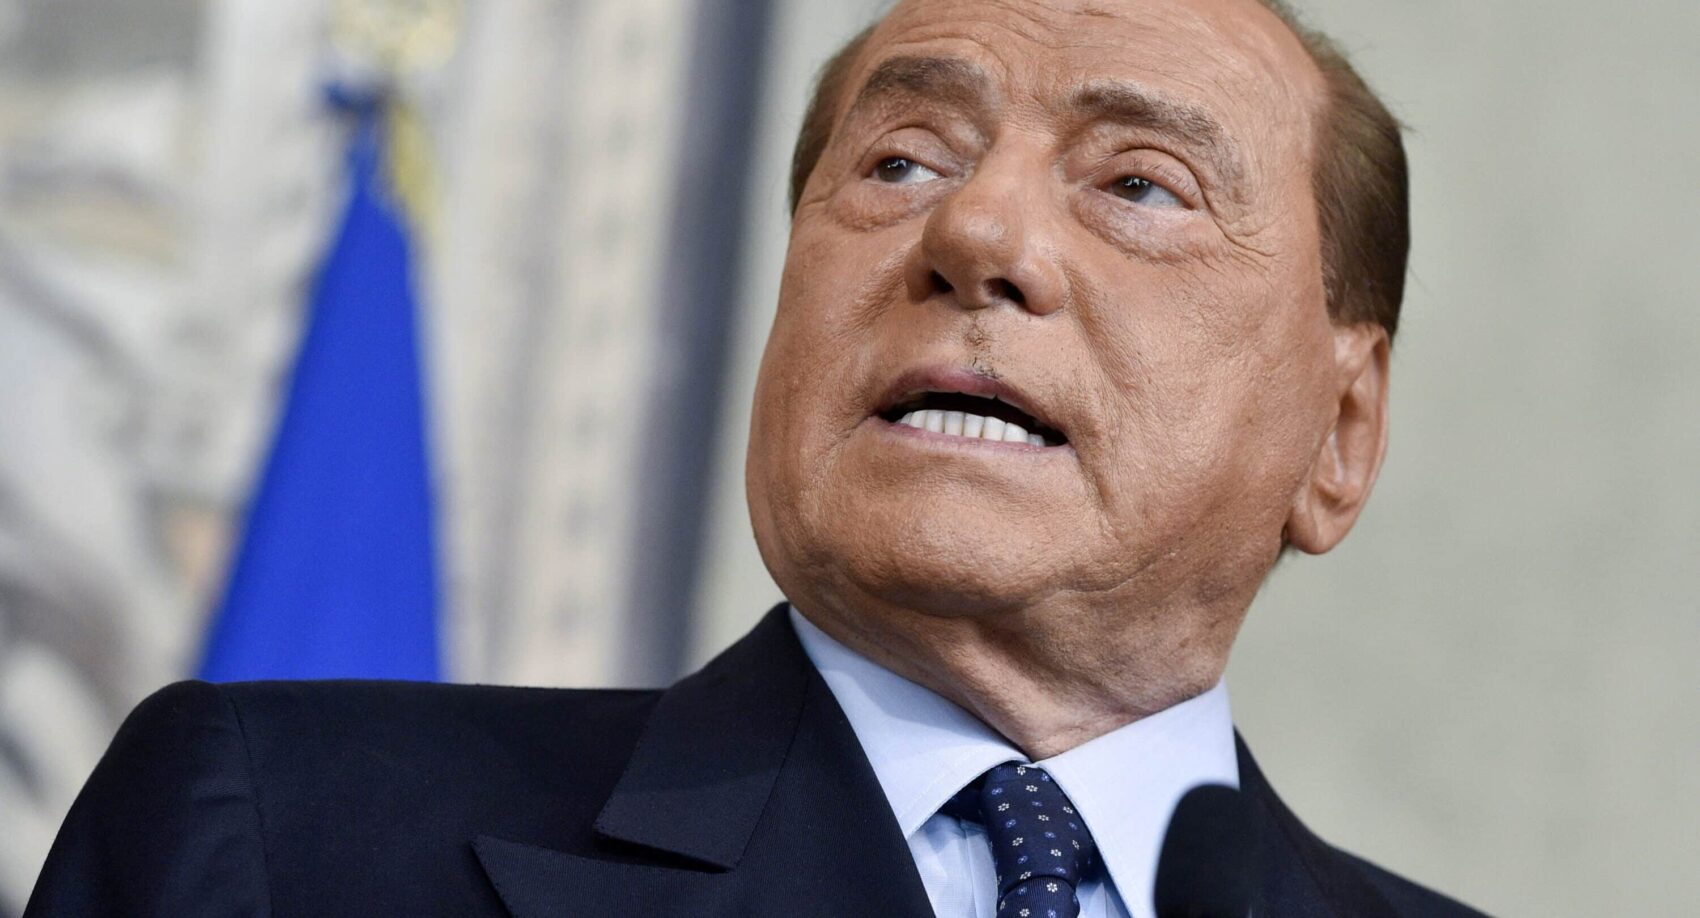 Funerali di Silvio Berlusconi, la diretta video. L’omelia: “Era un uomo e ora incontra Dio”